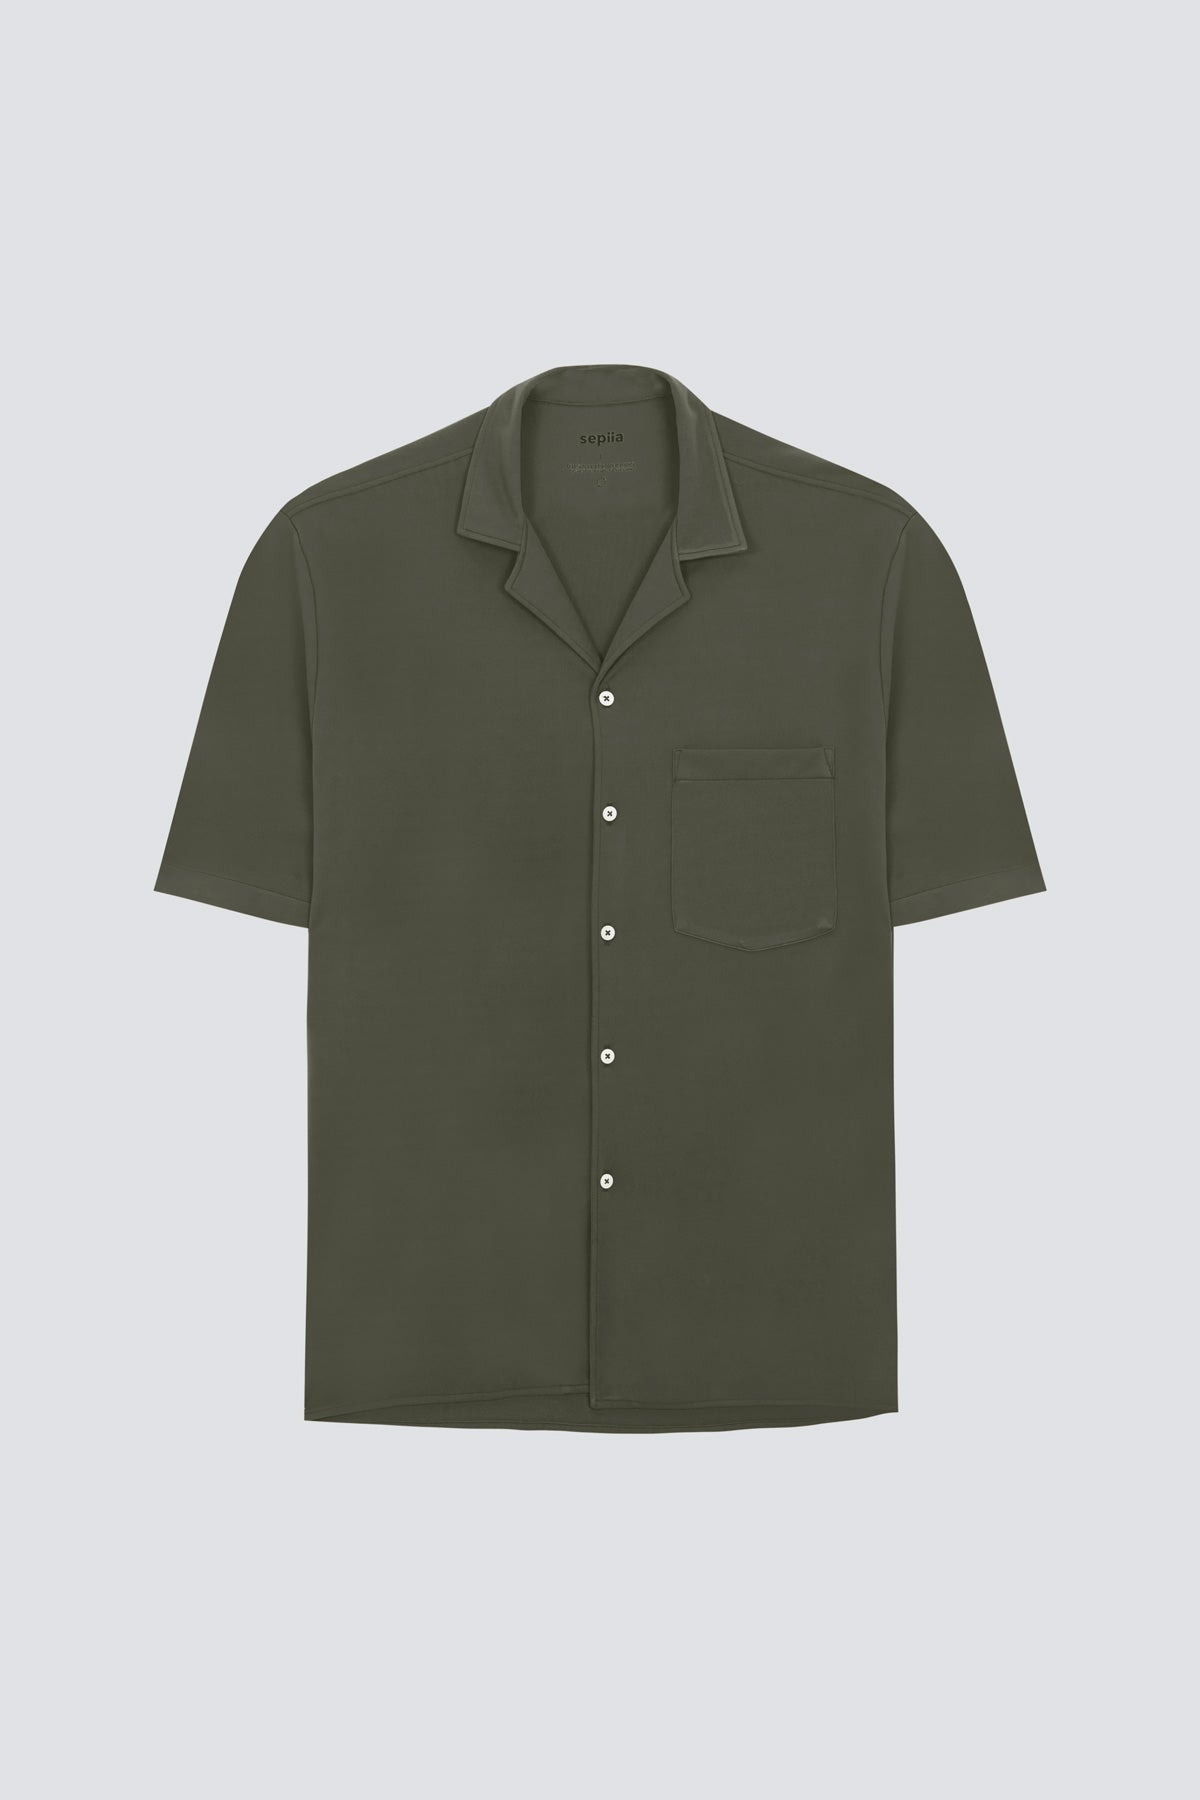 Camisa manga corta verde kaki de Sepiia, fresca y elegante, perfecta para el verano. Foto  prenda en plano